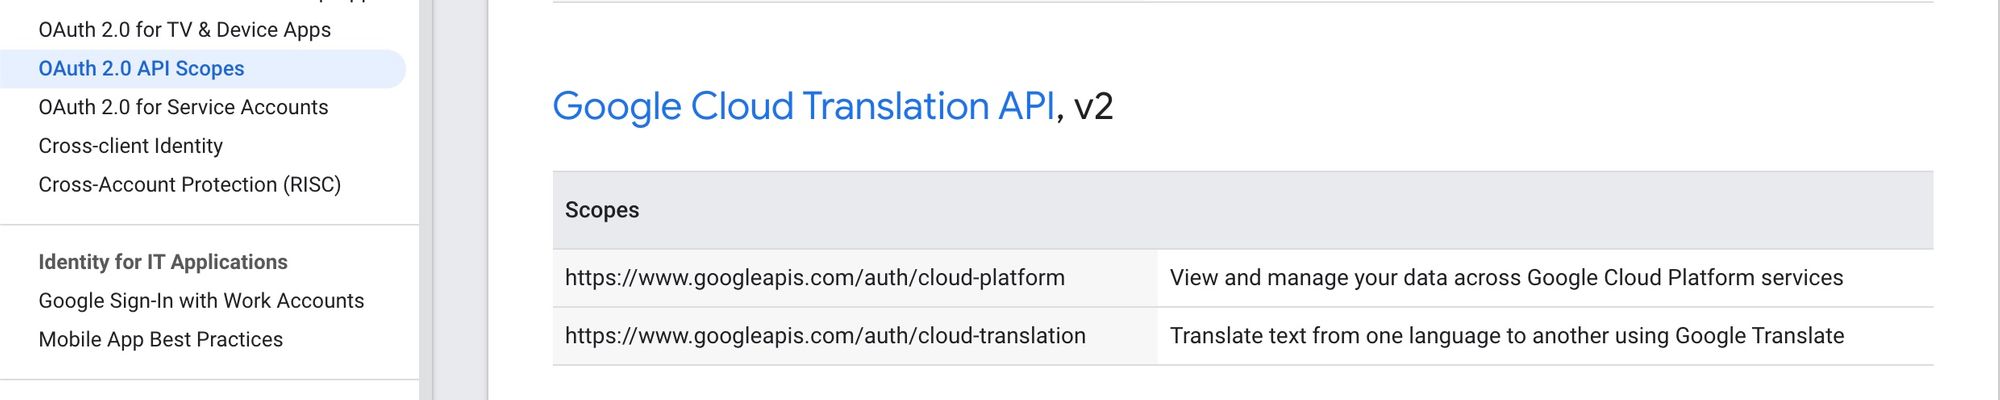 [坑] 使用谷歌账号进行第三方登录后, 调用"翻译 API" 产生的收费问题